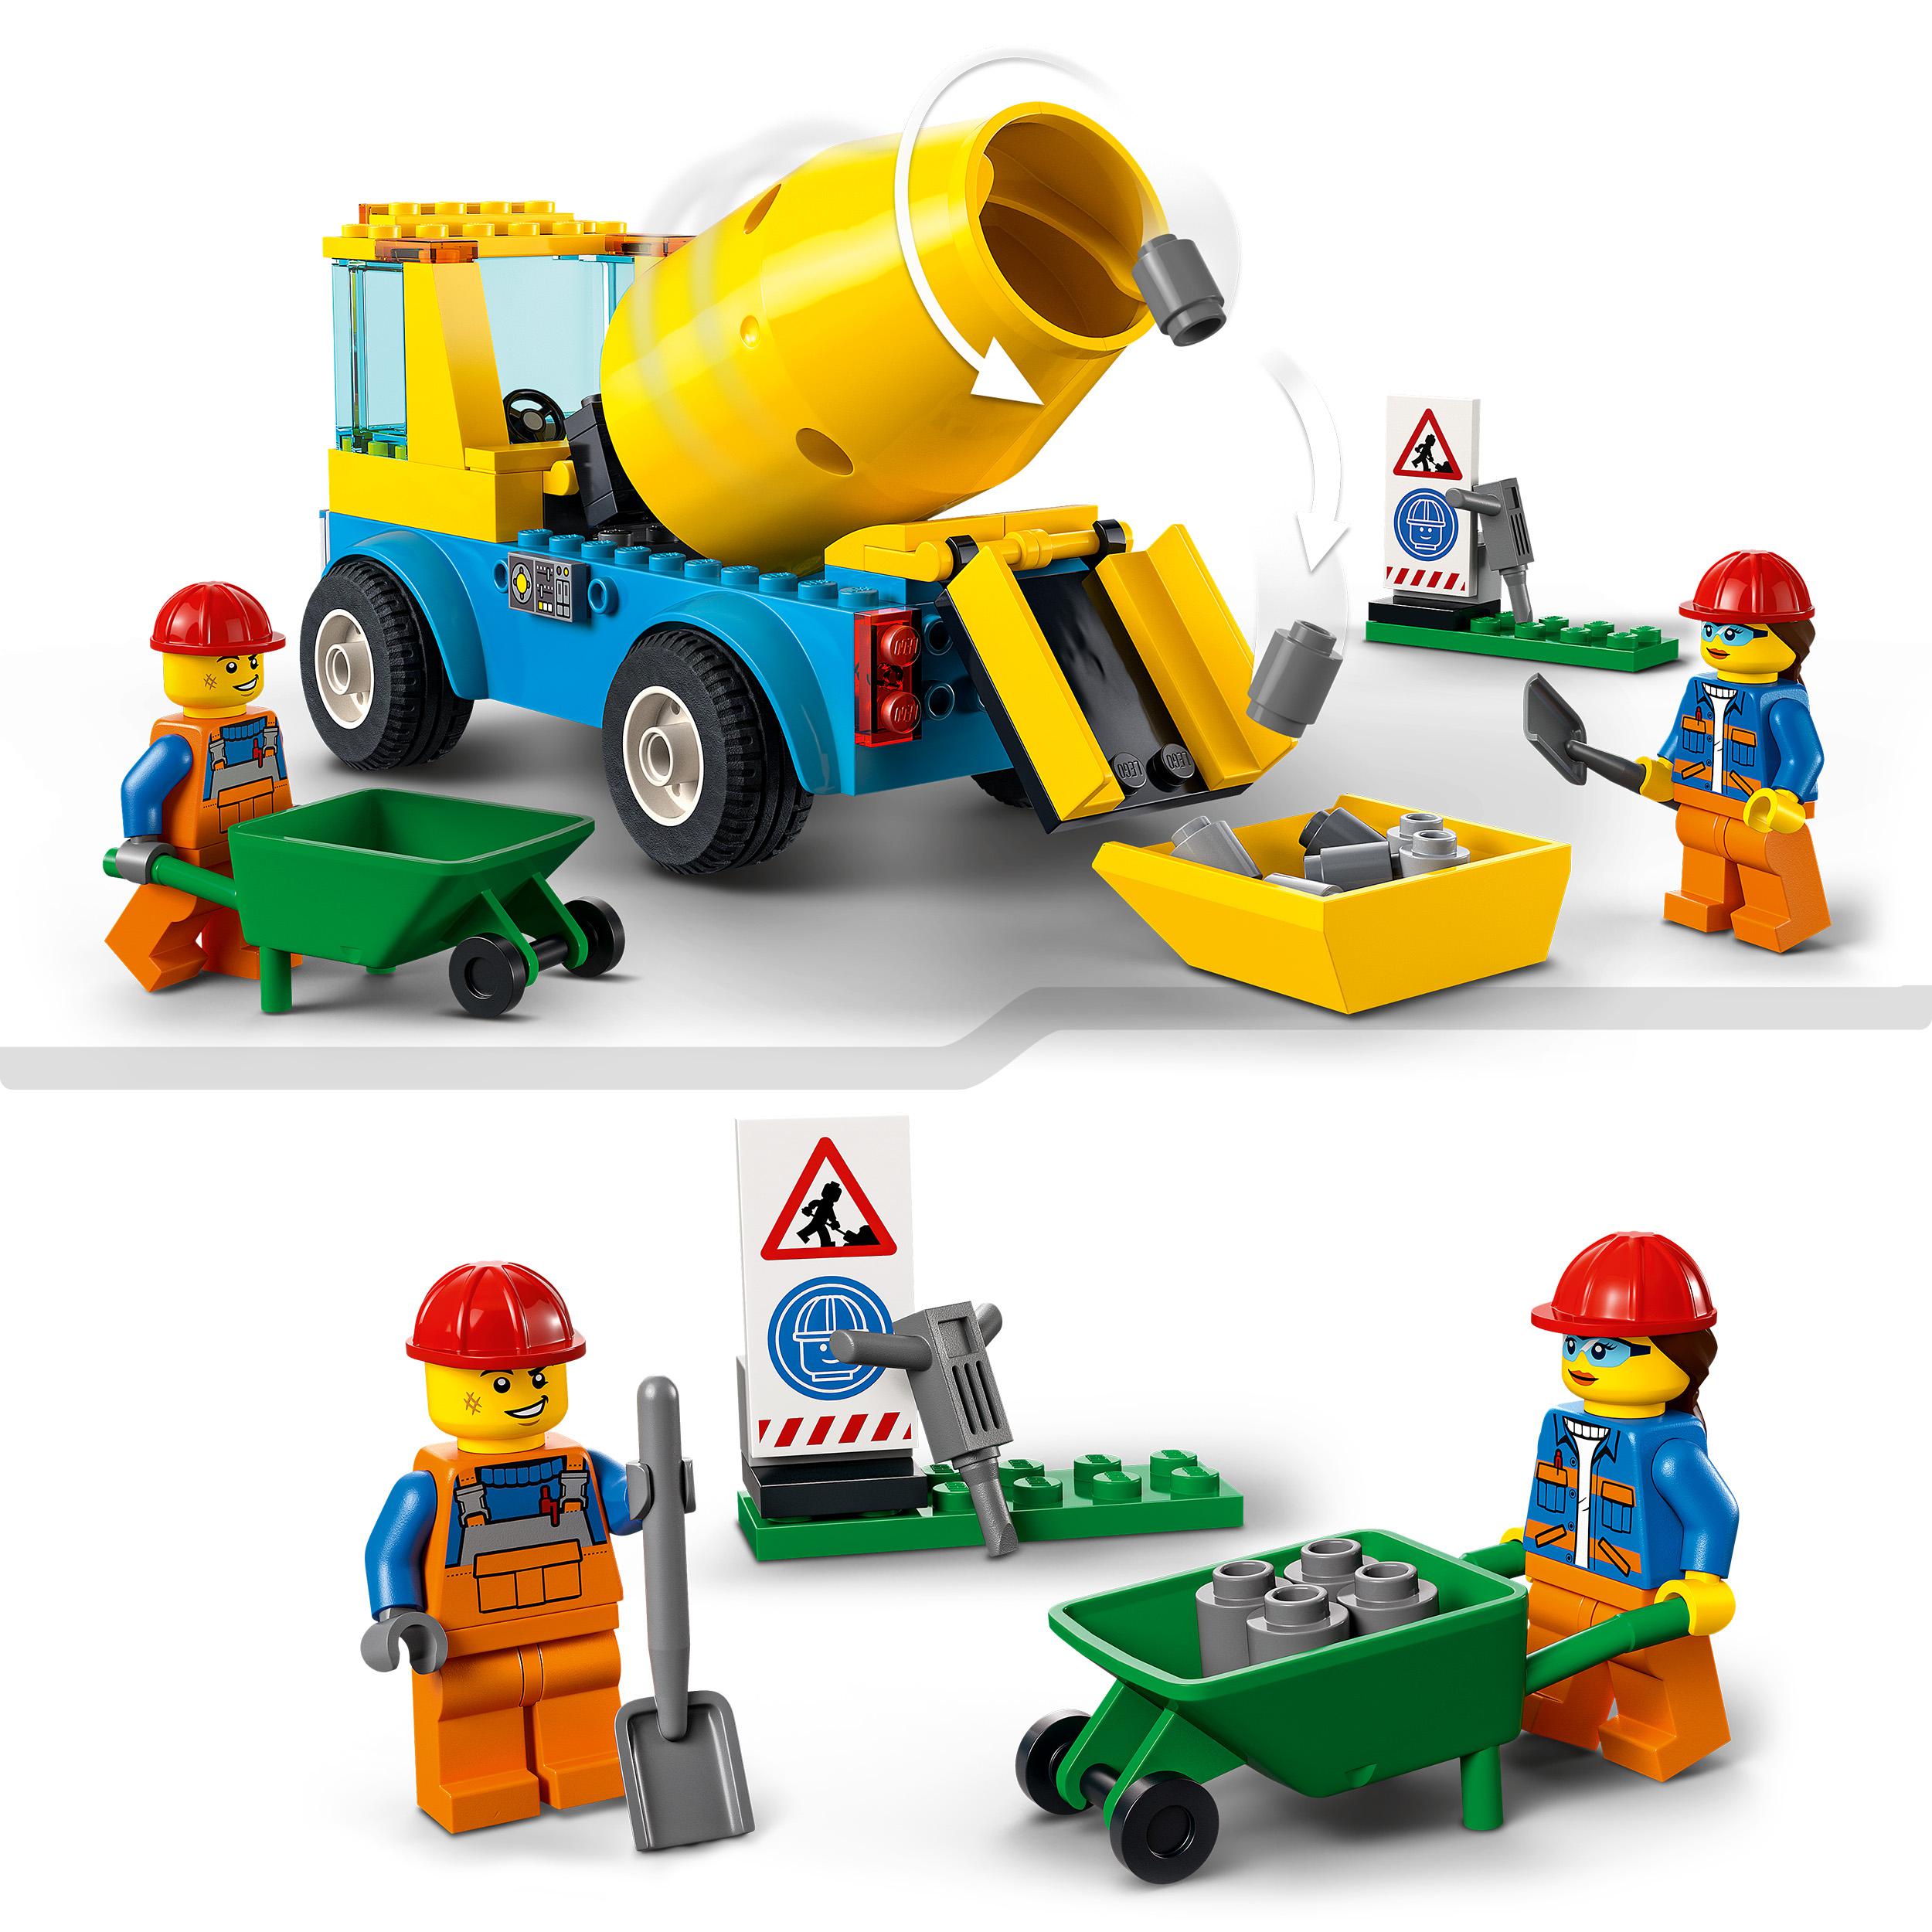 LEGO City Great Vehicles Autobetoniera, Camion Giocattolo, Giochi per Bambini da 60325, , large